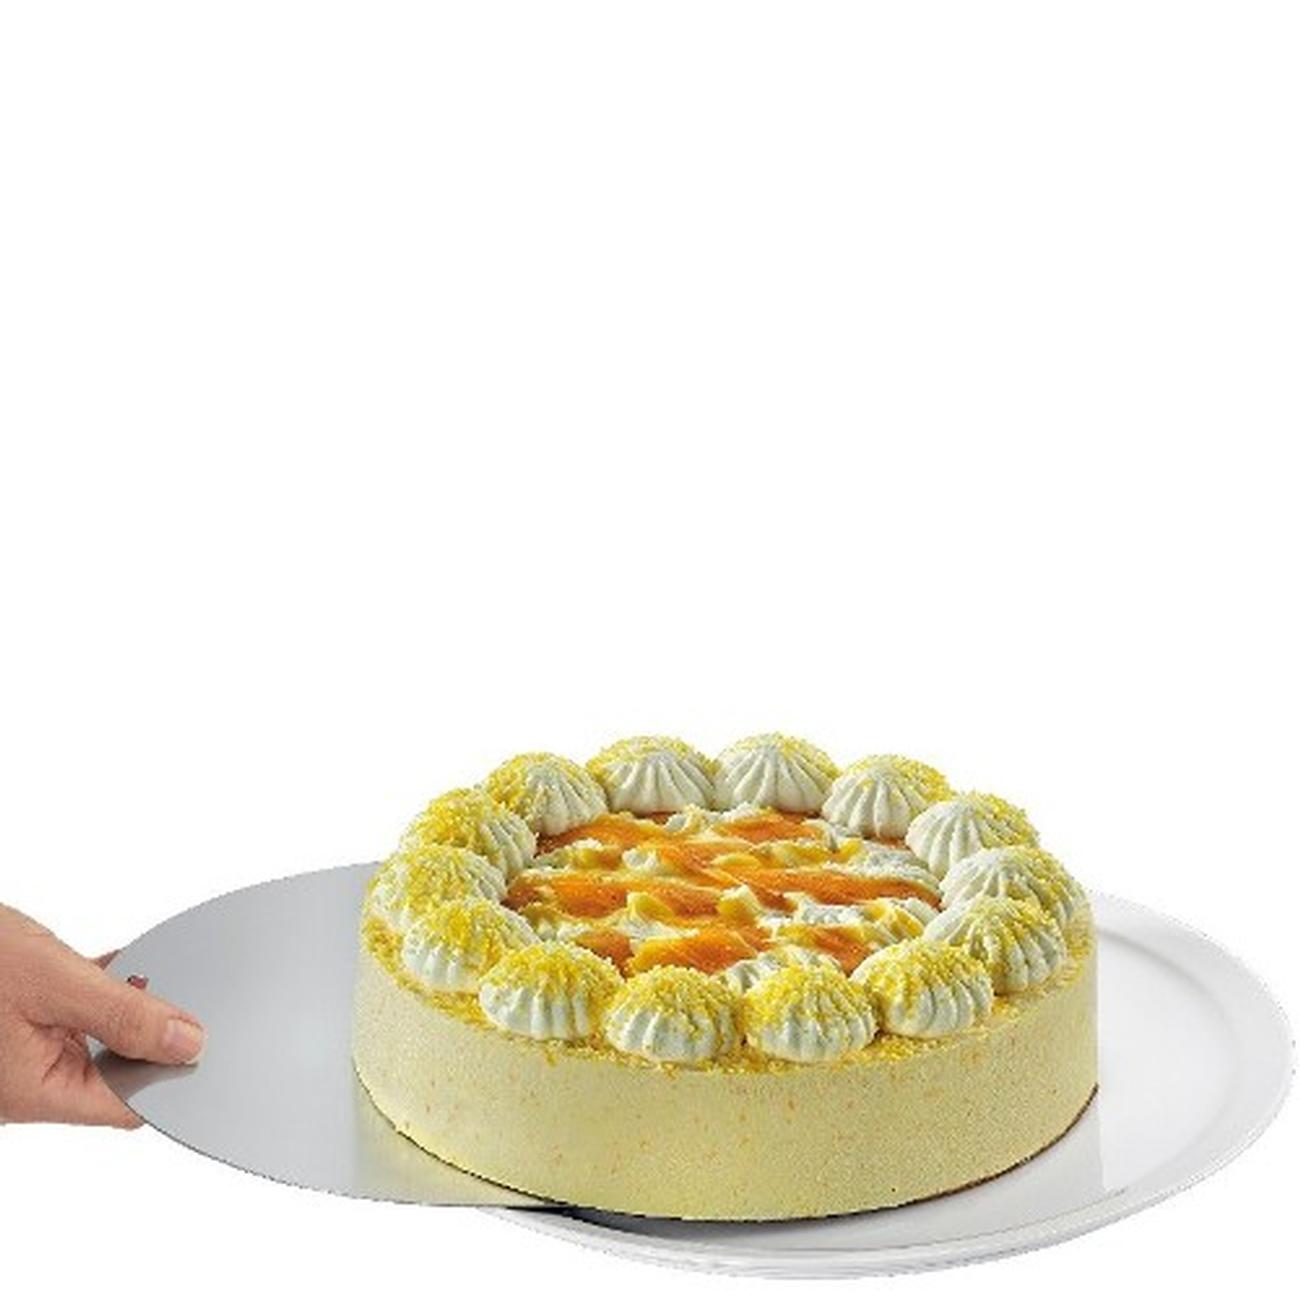 kuchenprofi-cake-lifter - Kuchenprofi Cake Lifter 